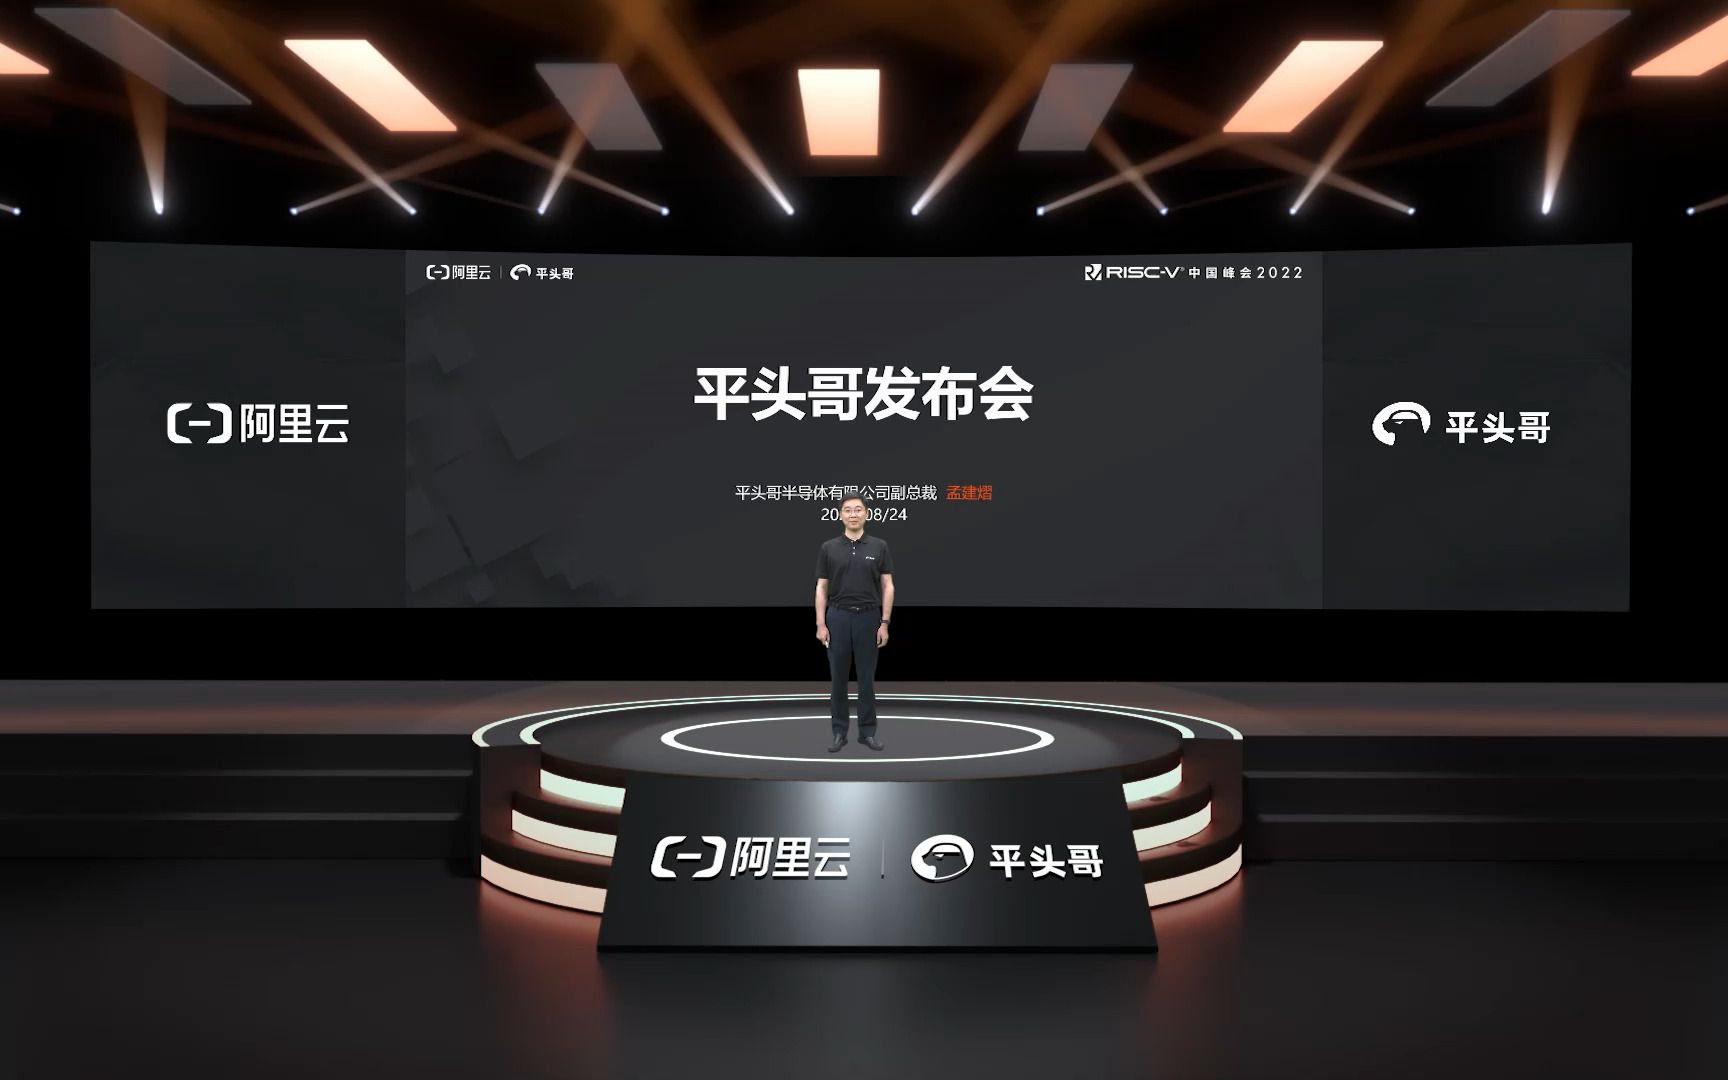 新产品发布环节1_3 - 平头哥半导体 - RISC-V中国峰会2022 